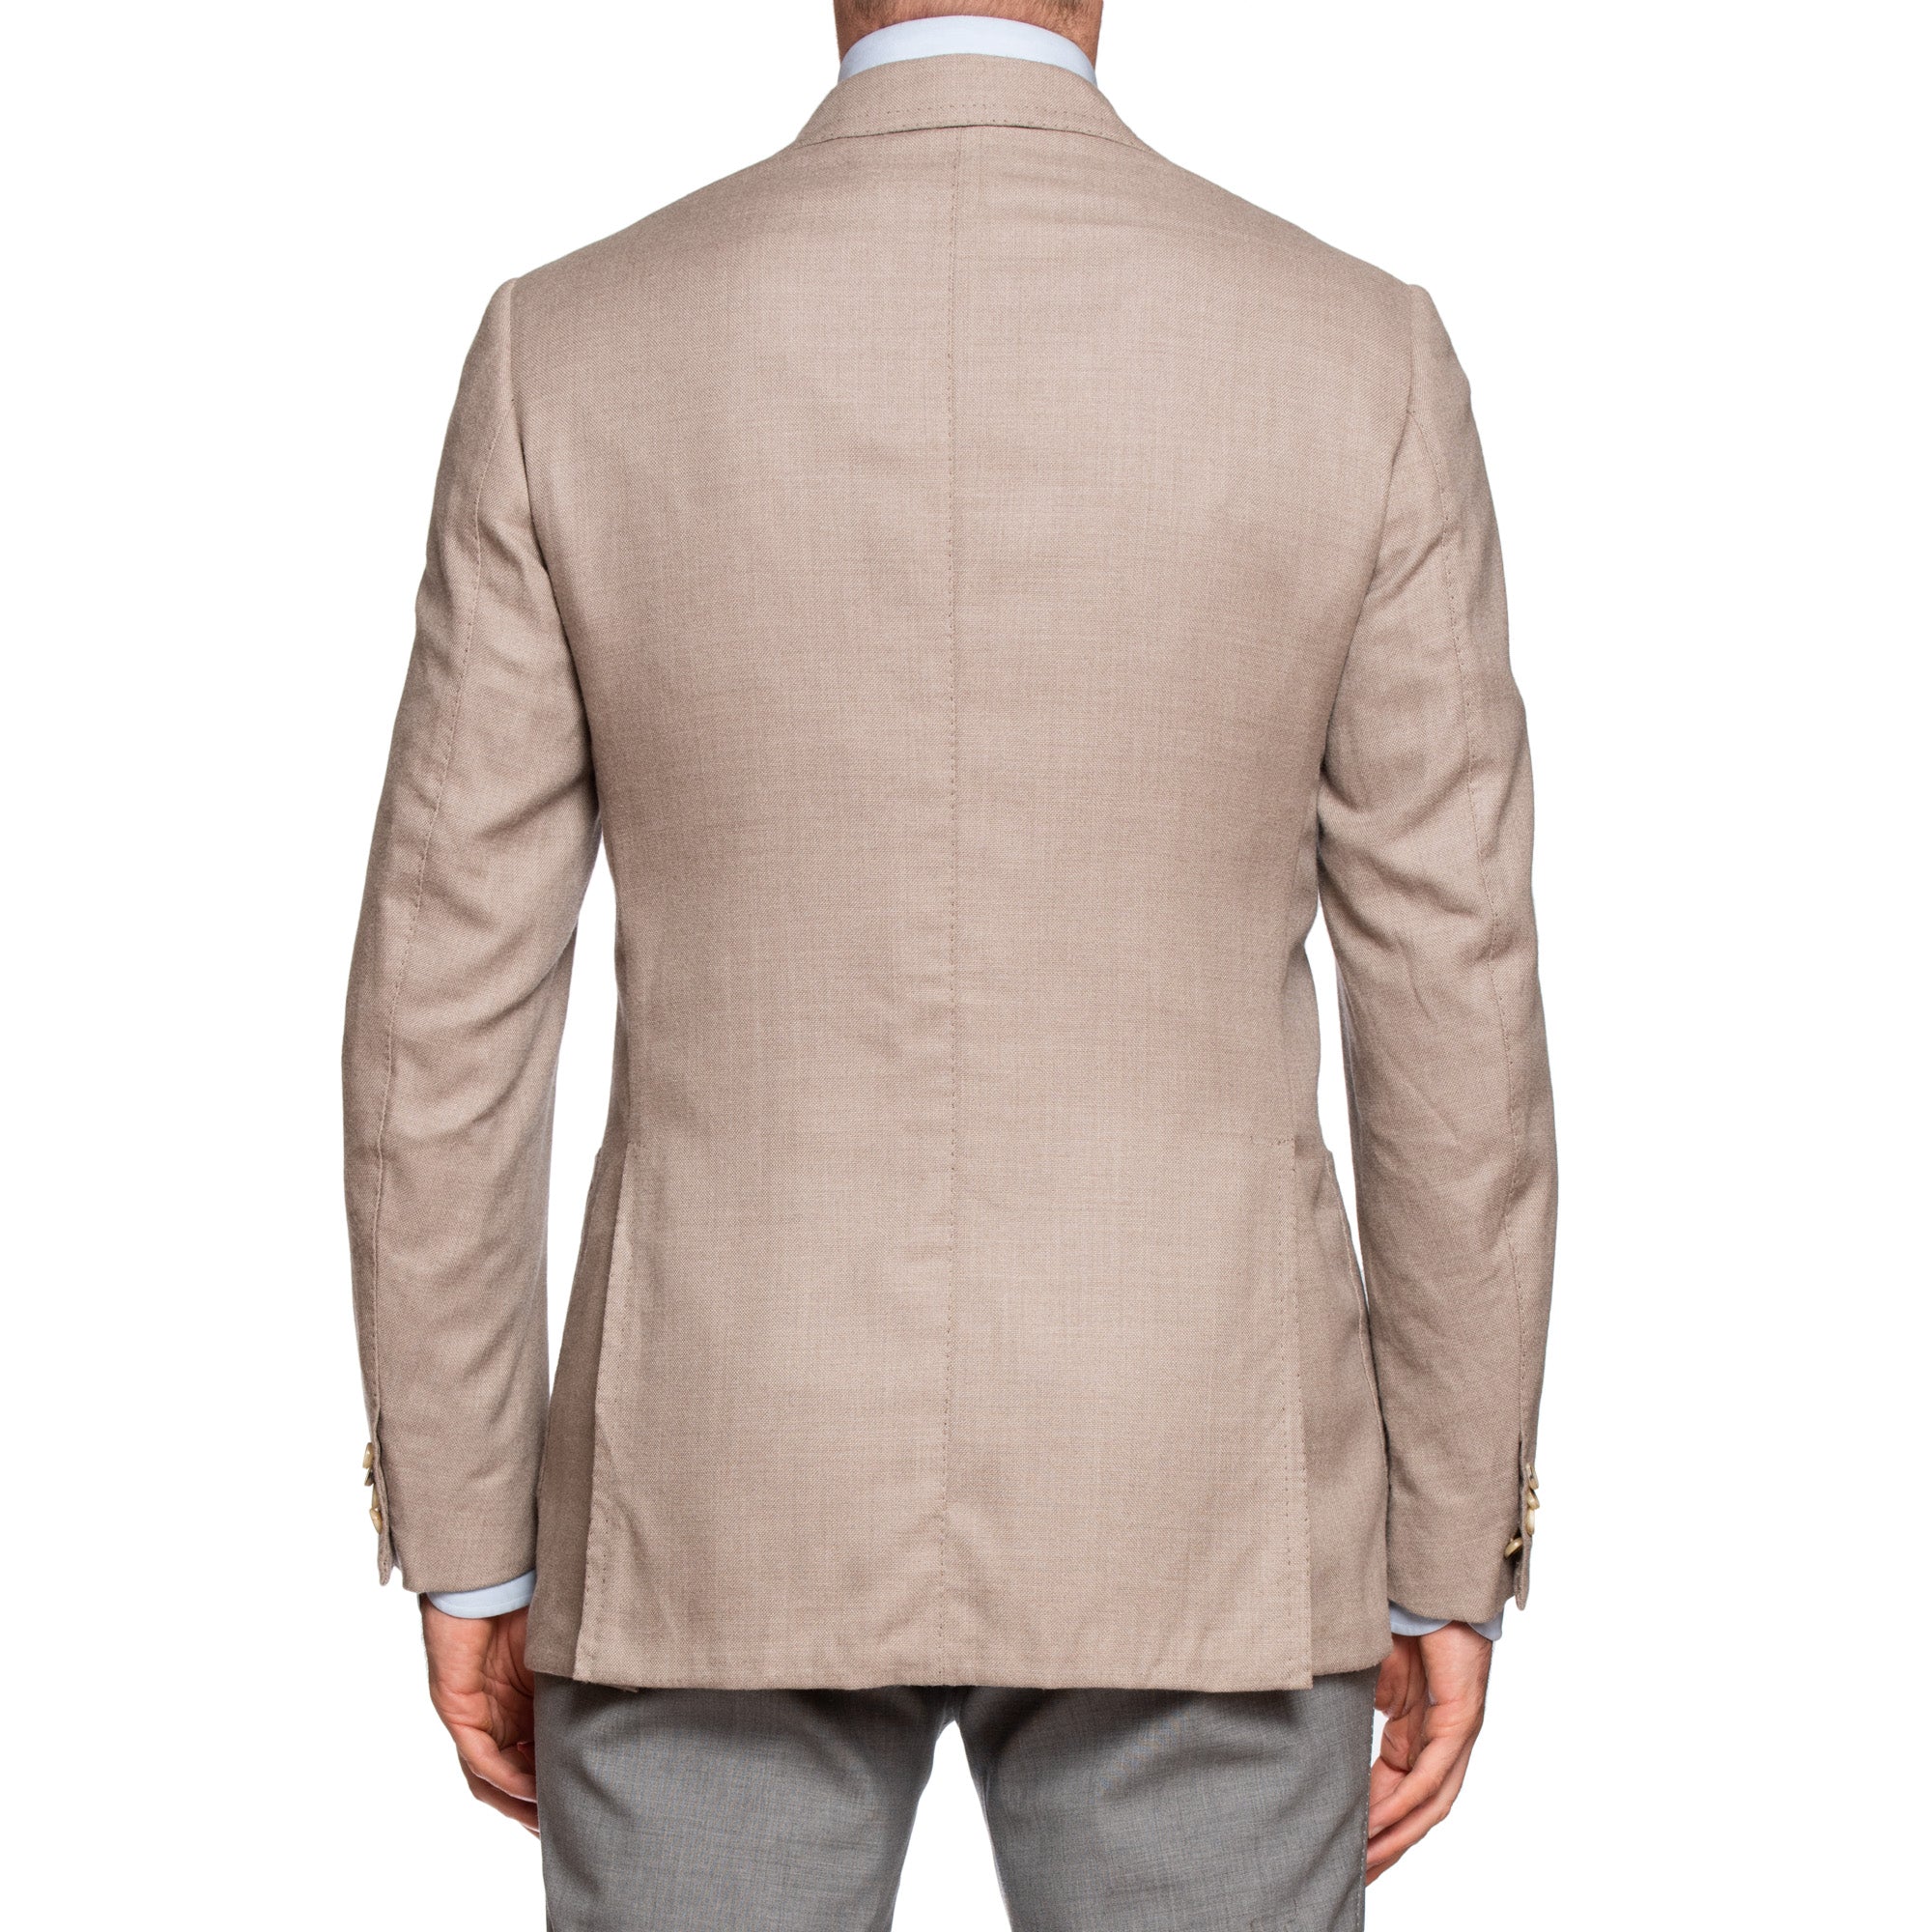 CESARE ATTOLINI for M.BARDELLI Light Gray Wool Super 140's Jacket 50 NEW US 40 CESARE ATTOLINI